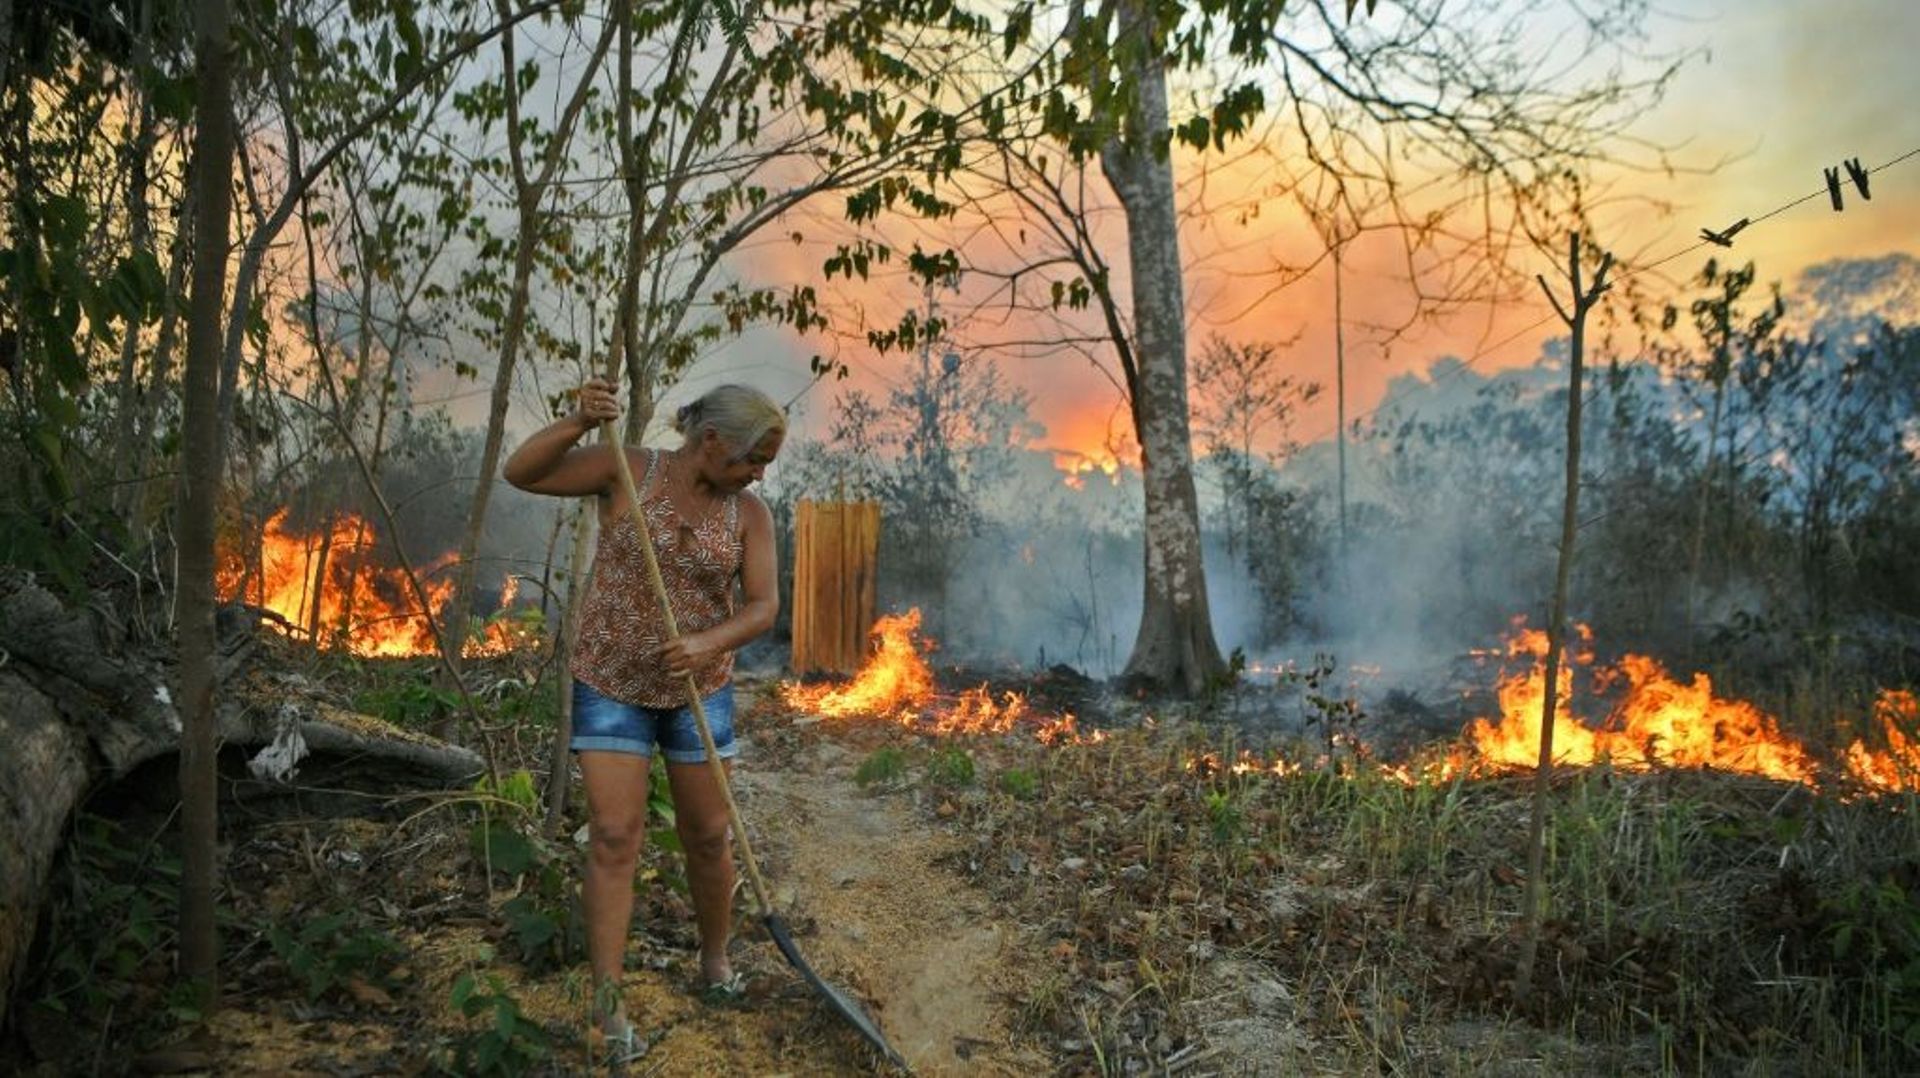 Dans une exploitation agricole ayant recours aux incendies volontaires pour préparer la terre, le 15 août 2020 près de Novo Progresso, au Brésil